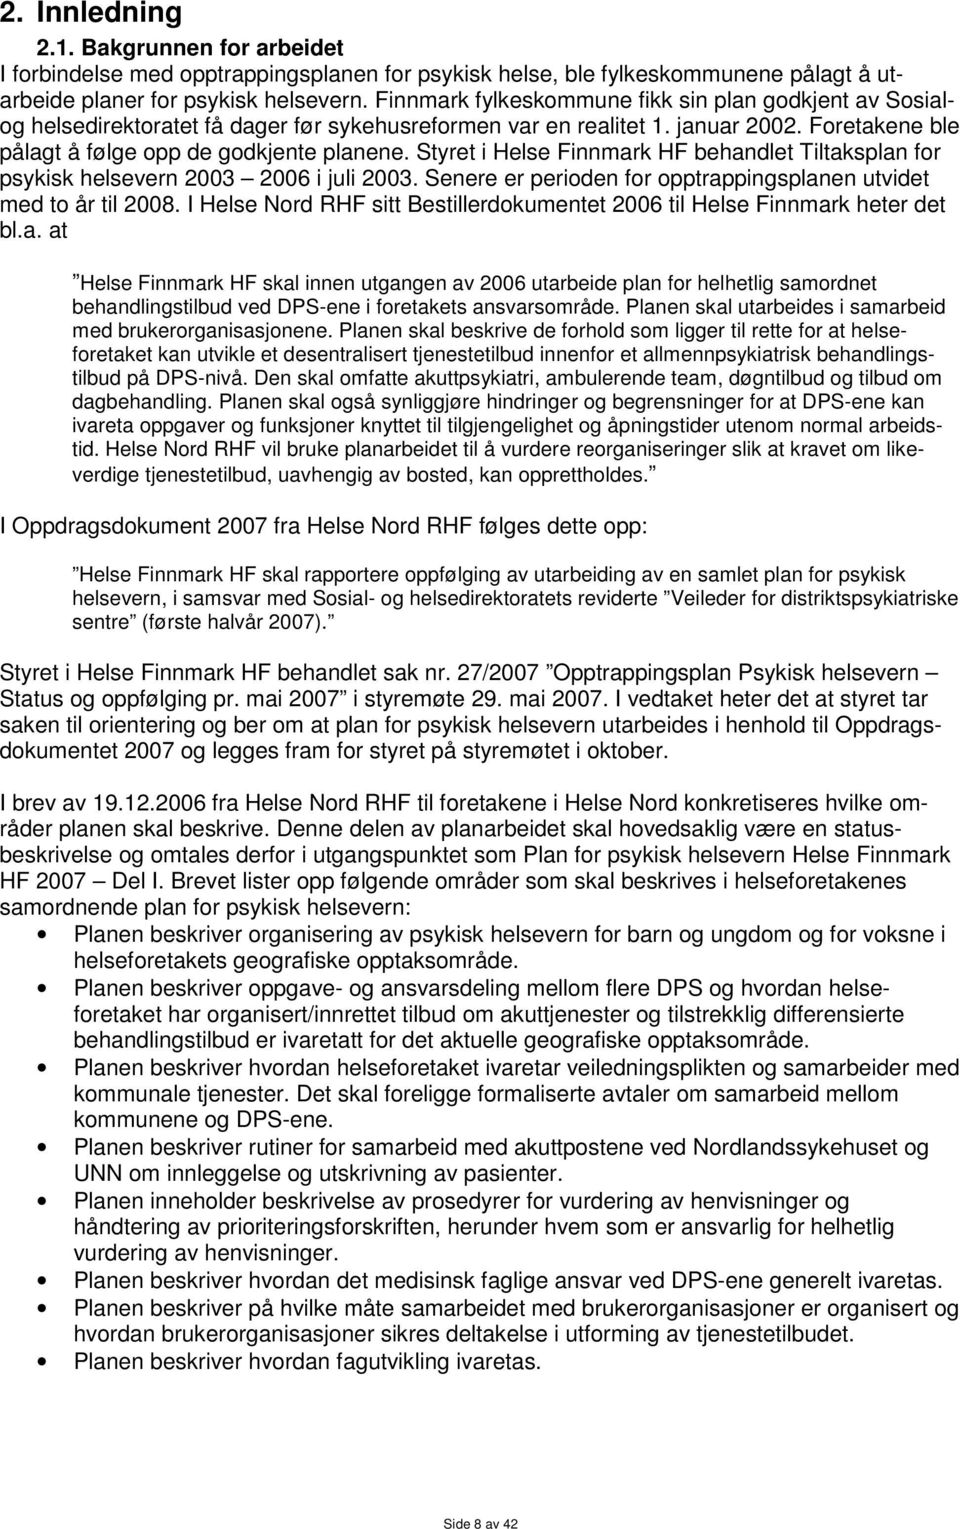 Styret i Helse Finnmark HF behandlet Tiltaksplan for psykisk helsevern 2003 2006 i juli 2003. Senere er perioden for opptrappingsplanen utvidet med to år til 2008.